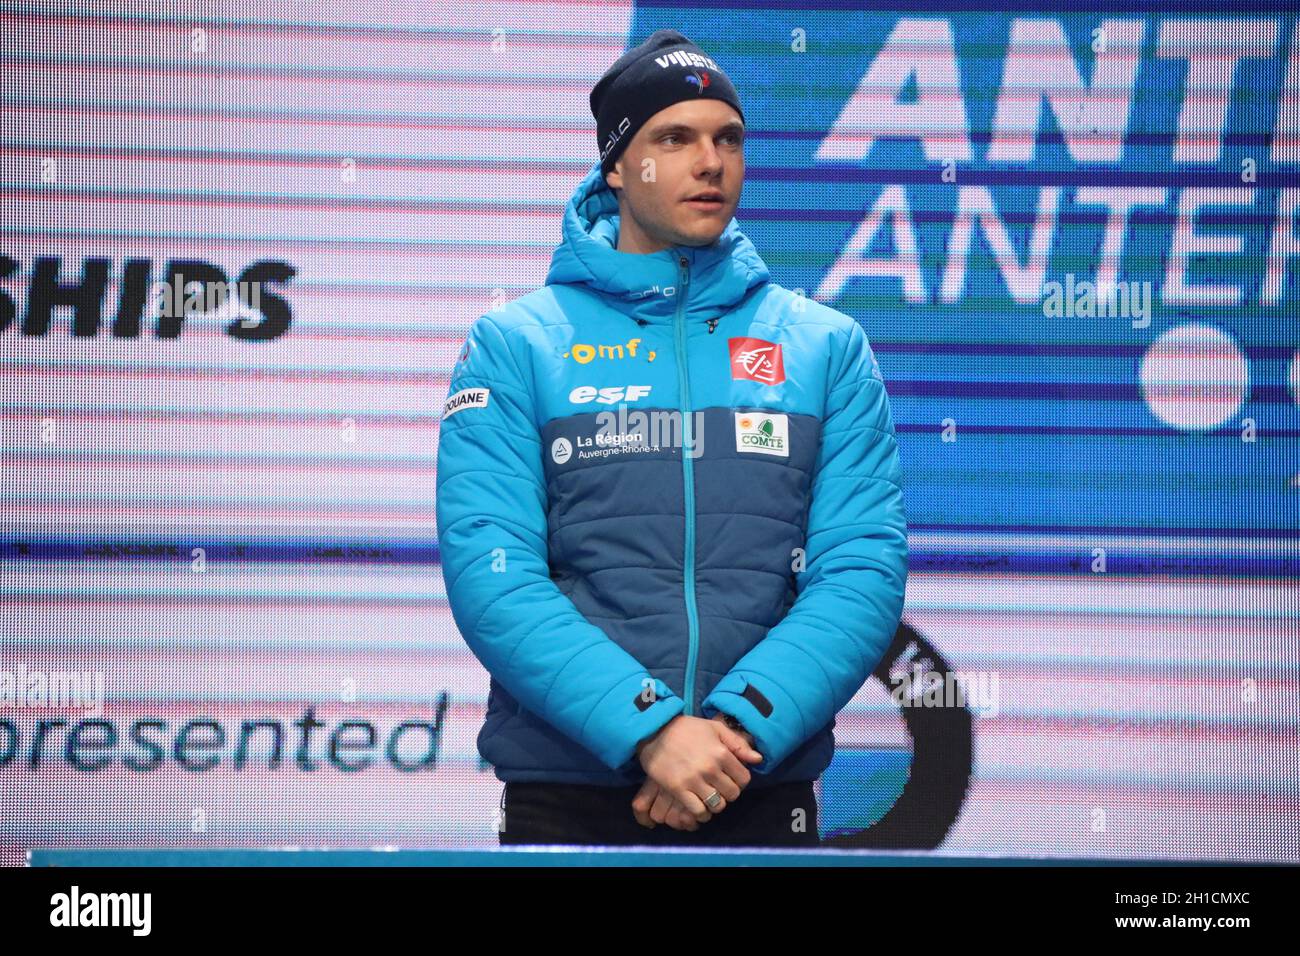 Emilien Jacquelin (Frankreich) bei der Nationalhymne bei der IBU Biathlon-Weltmeisterschaft Antholz 2020 Stock Photo